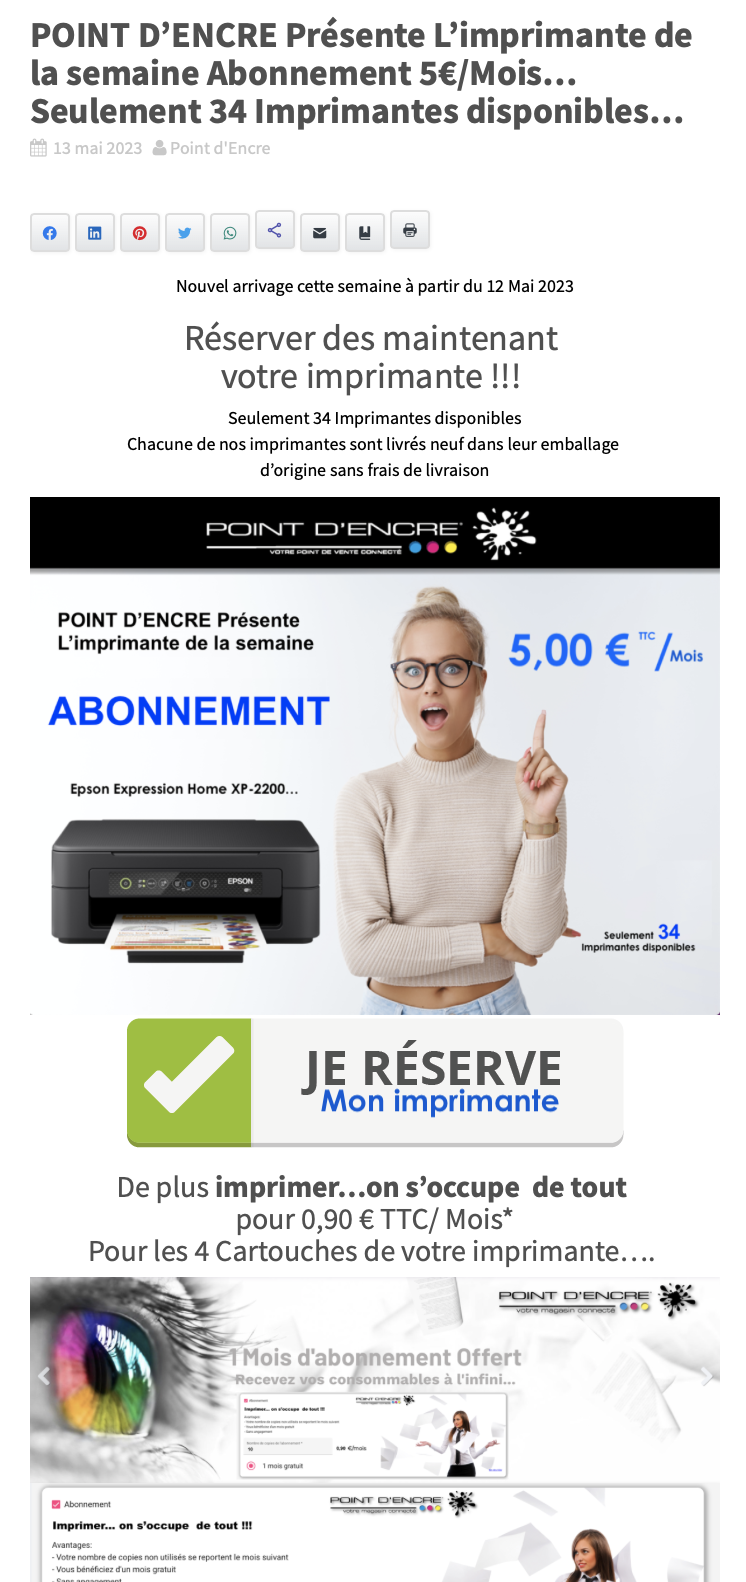 POINT D’ENCRE Présente L’imprimante de la semaine Abonnement 5€/Mois… Seulement 34 Imprimantes disponibles...